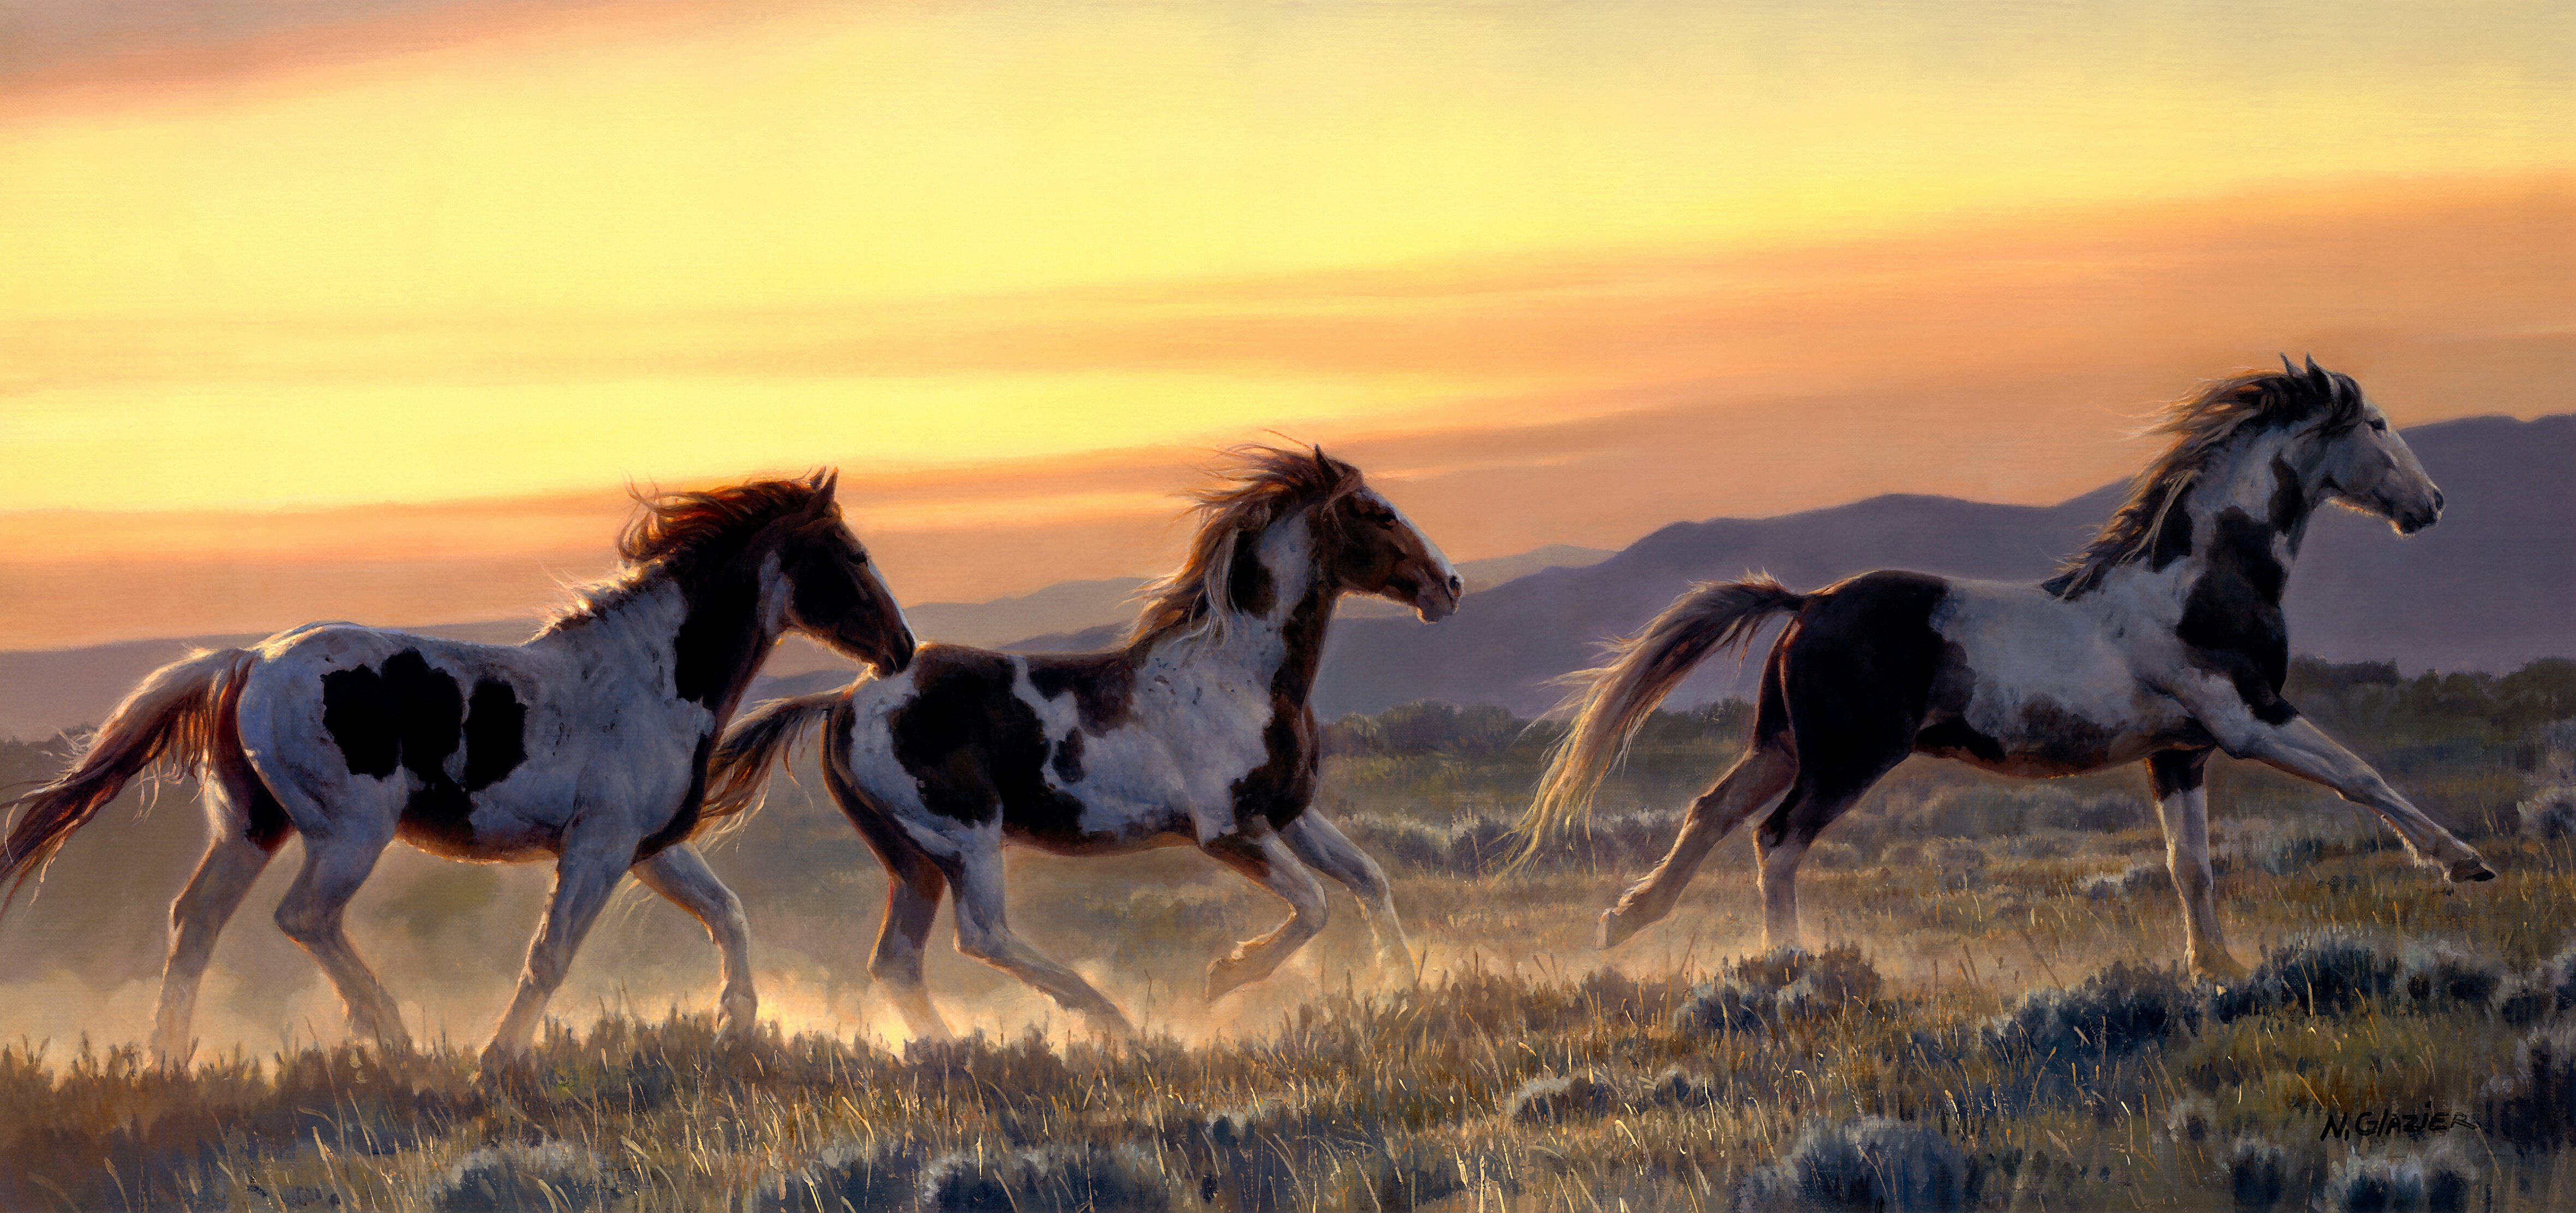 Horse 4k Ultra HD Wallpaper by Nancy Glazier